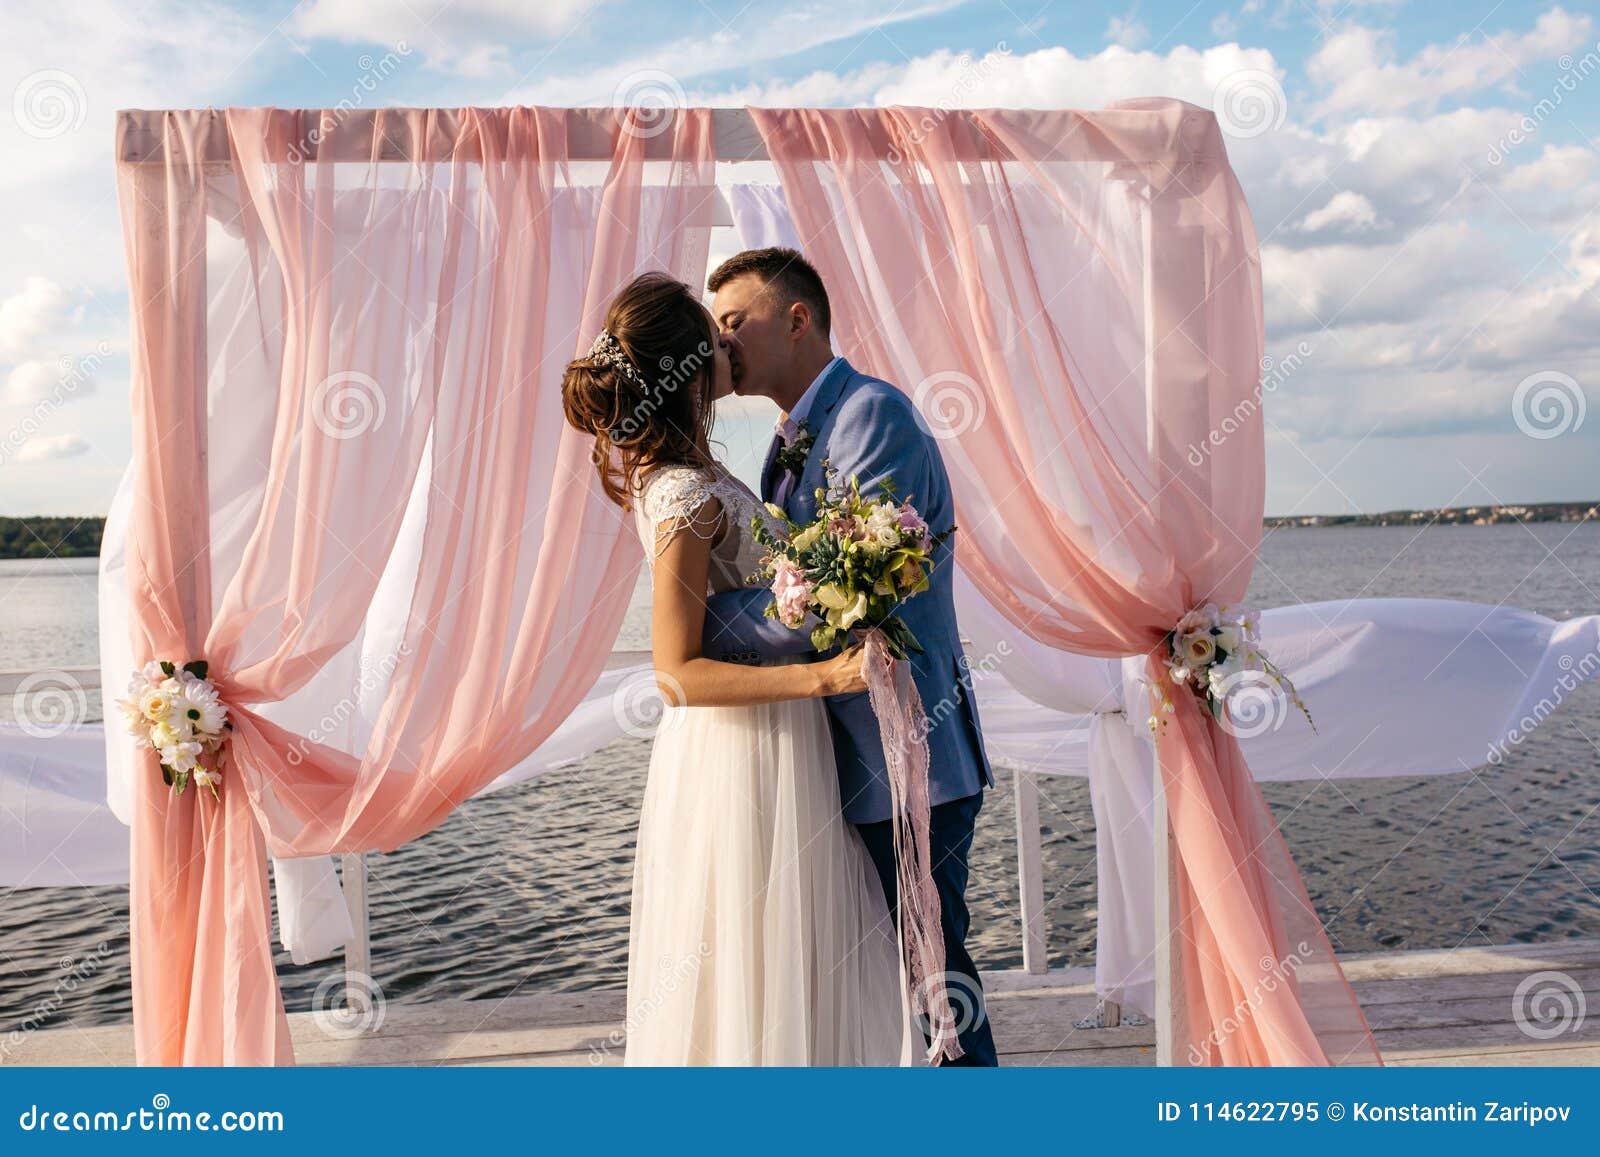 西式婚礼新郎新娘幸福亲吻的剪影浪漫氛围灯光图片下载 - 觅知网